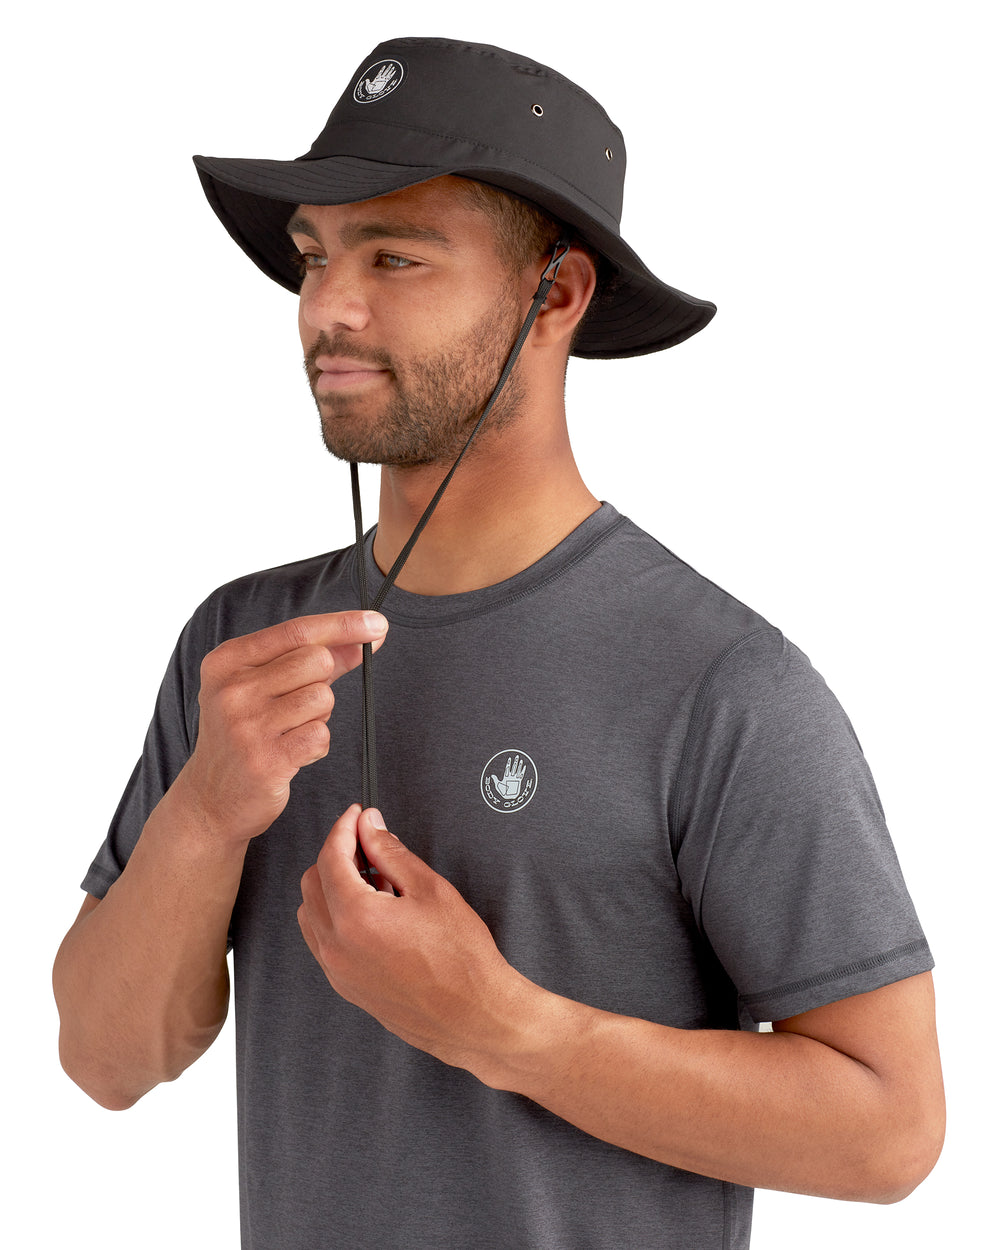 Standard Boonie Hat - Black